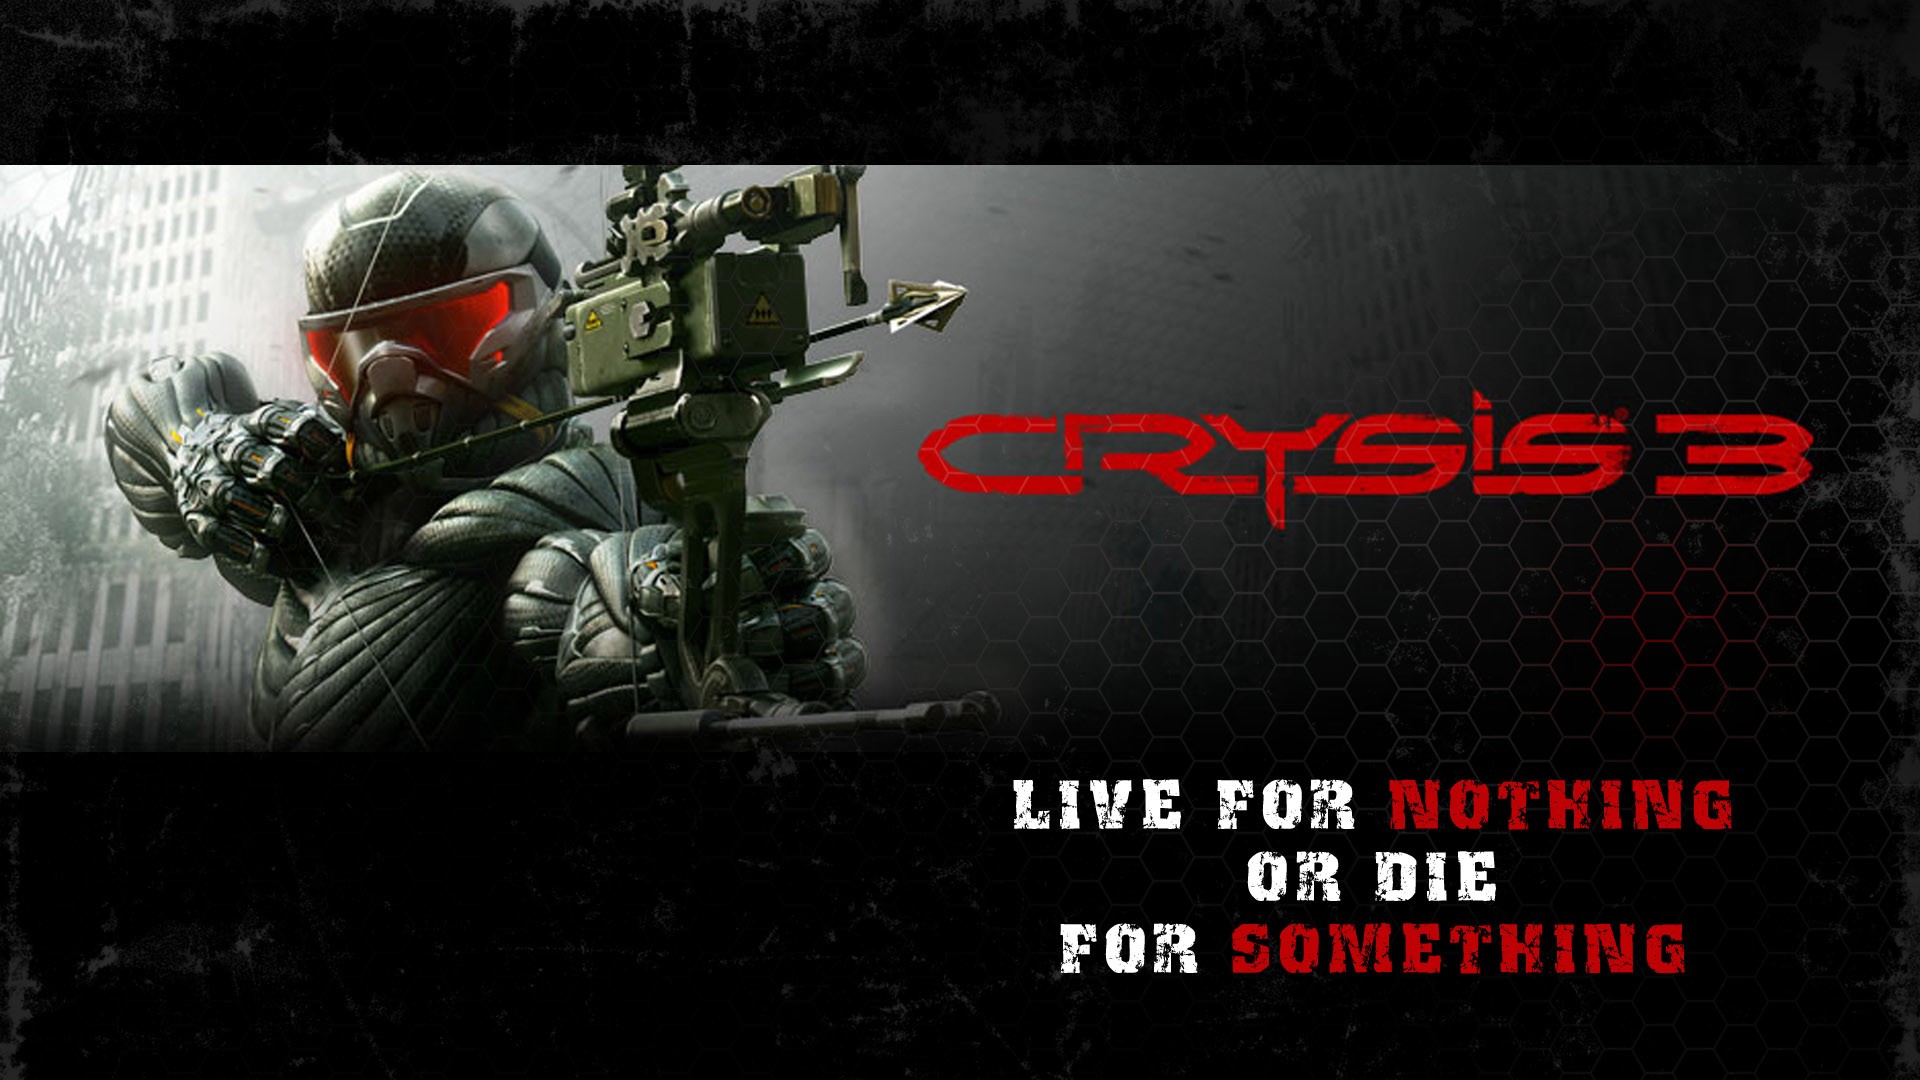 видеоигры, Crytek, Crysis 3 - обои на рабочий стол